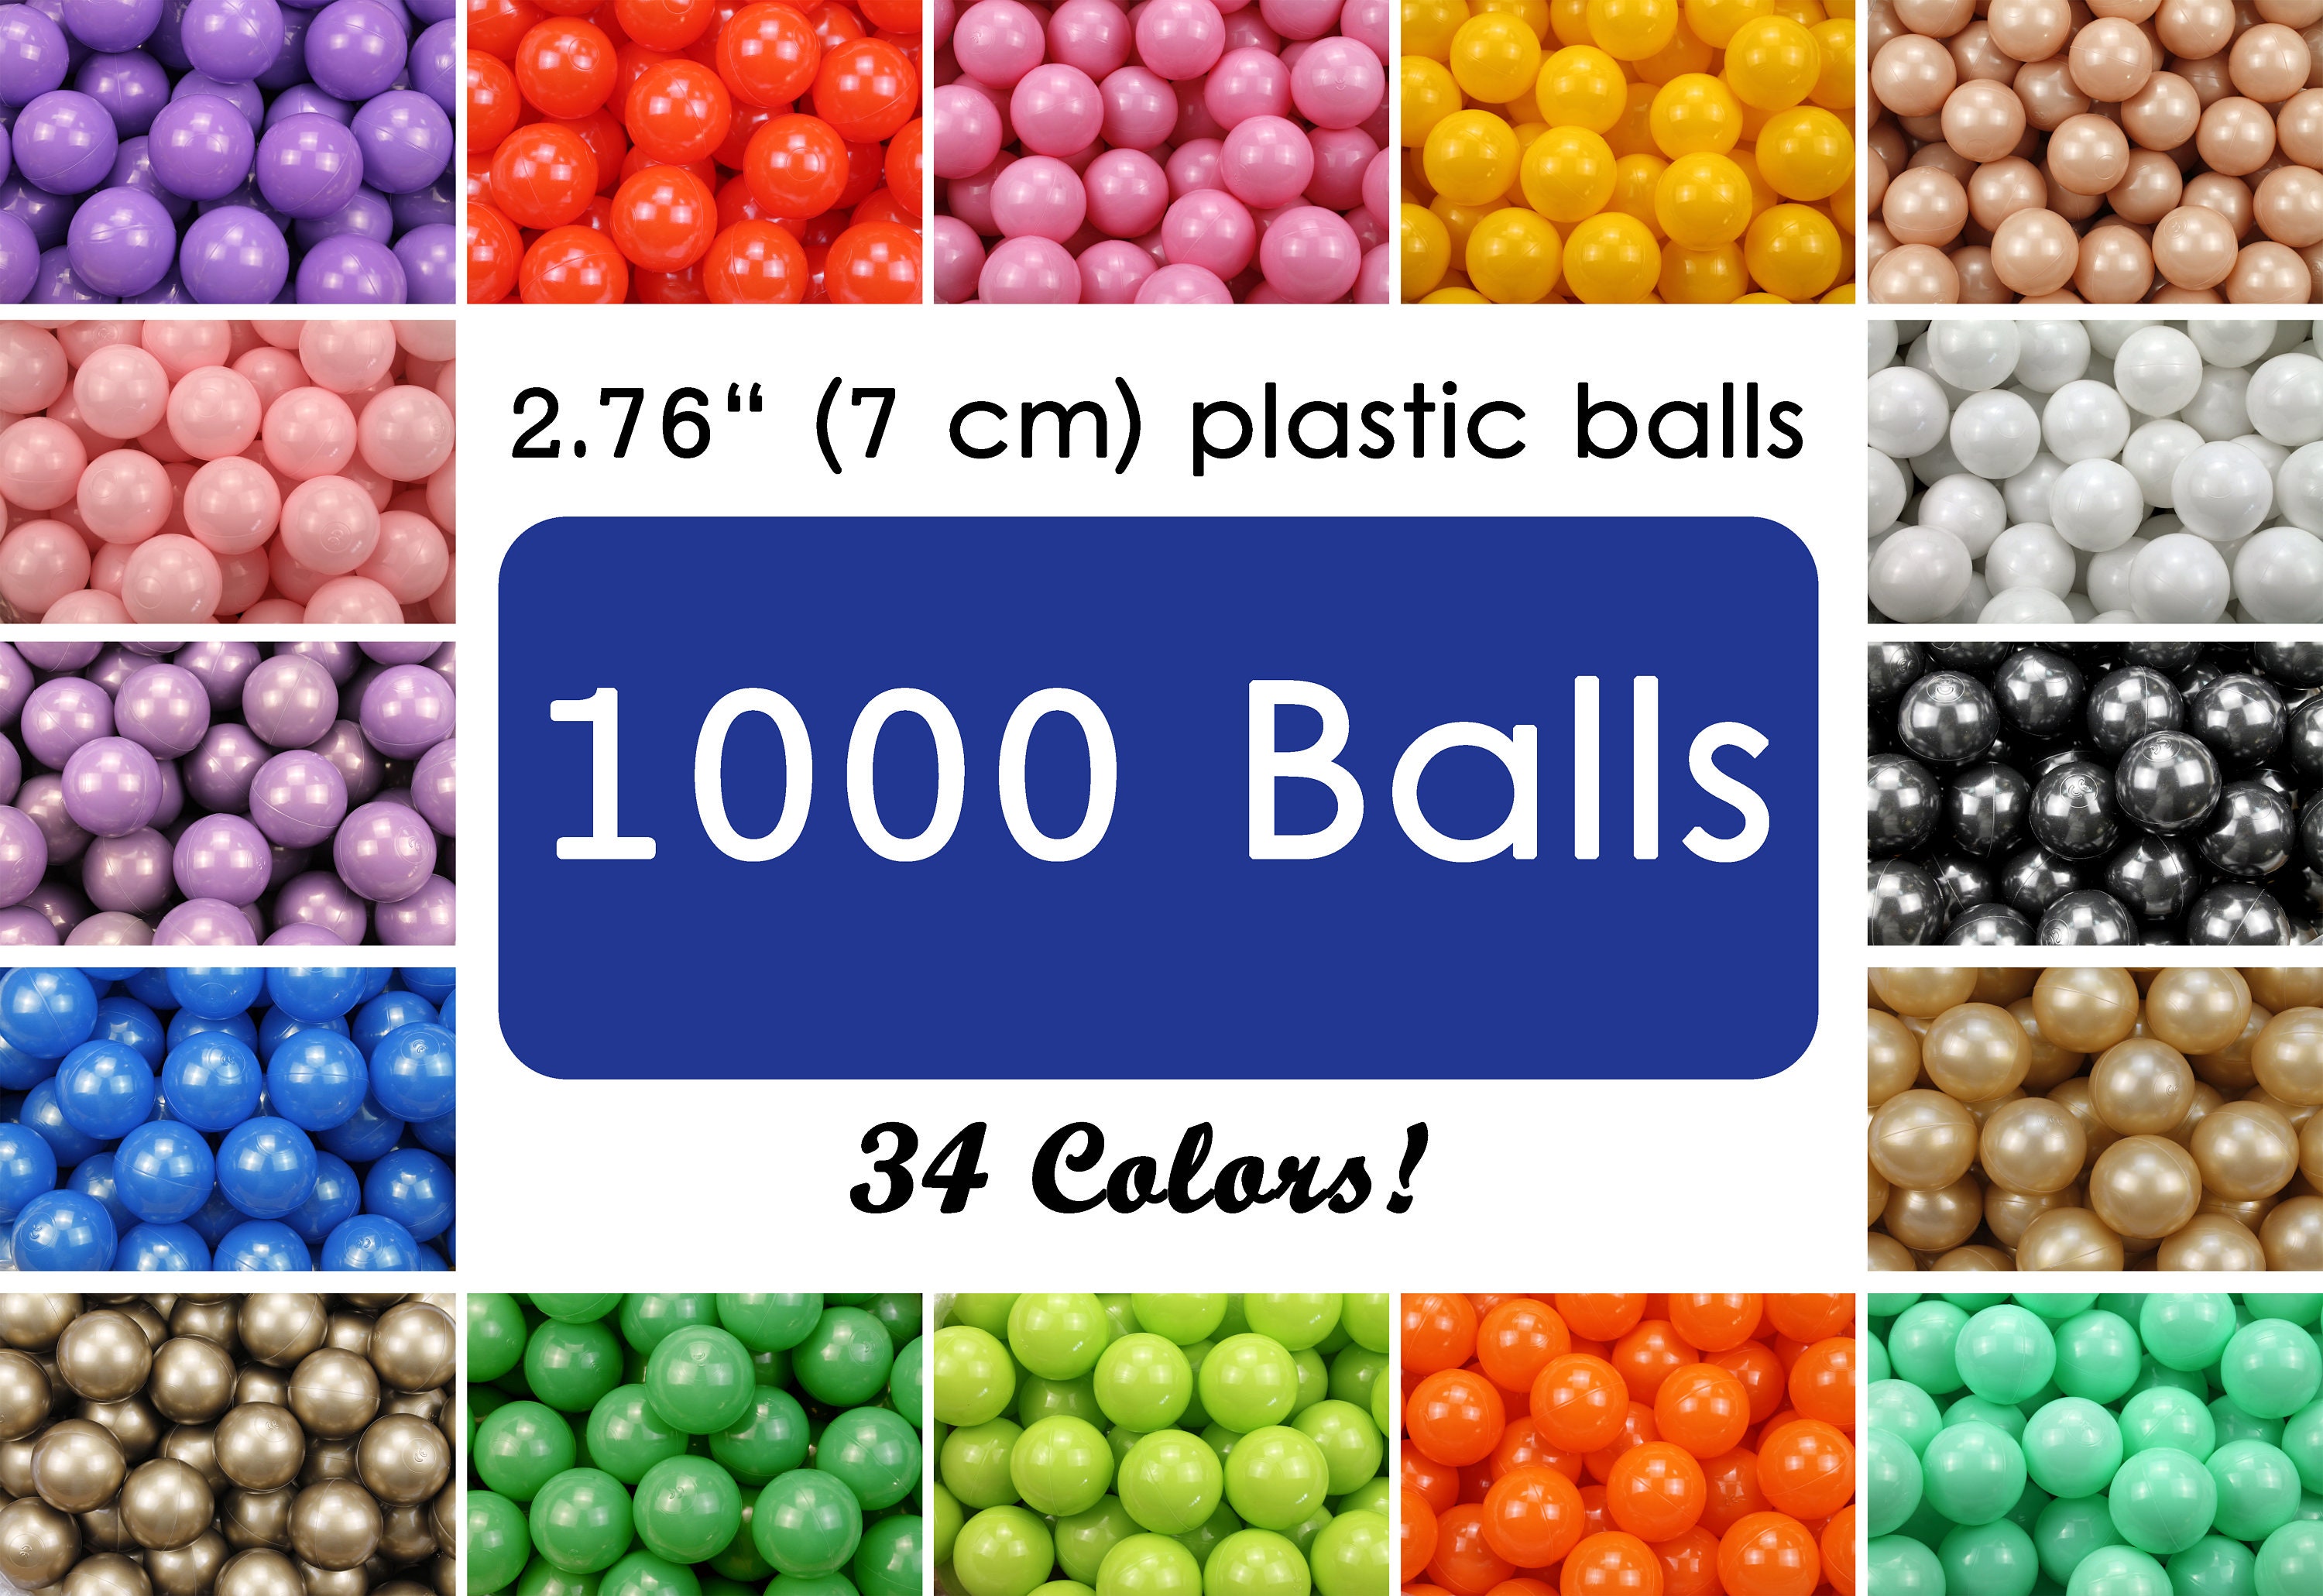 50 Bolas De Piscina Para Niños Pequeños Bolas De Juguete De Plástico A  Prueba De Aplastamiento Para Piscina De Bolas Juguetes Acuáticos Para  Piscina Infantil Bolas Oceánicas Para Tienda De Campaña 2,16